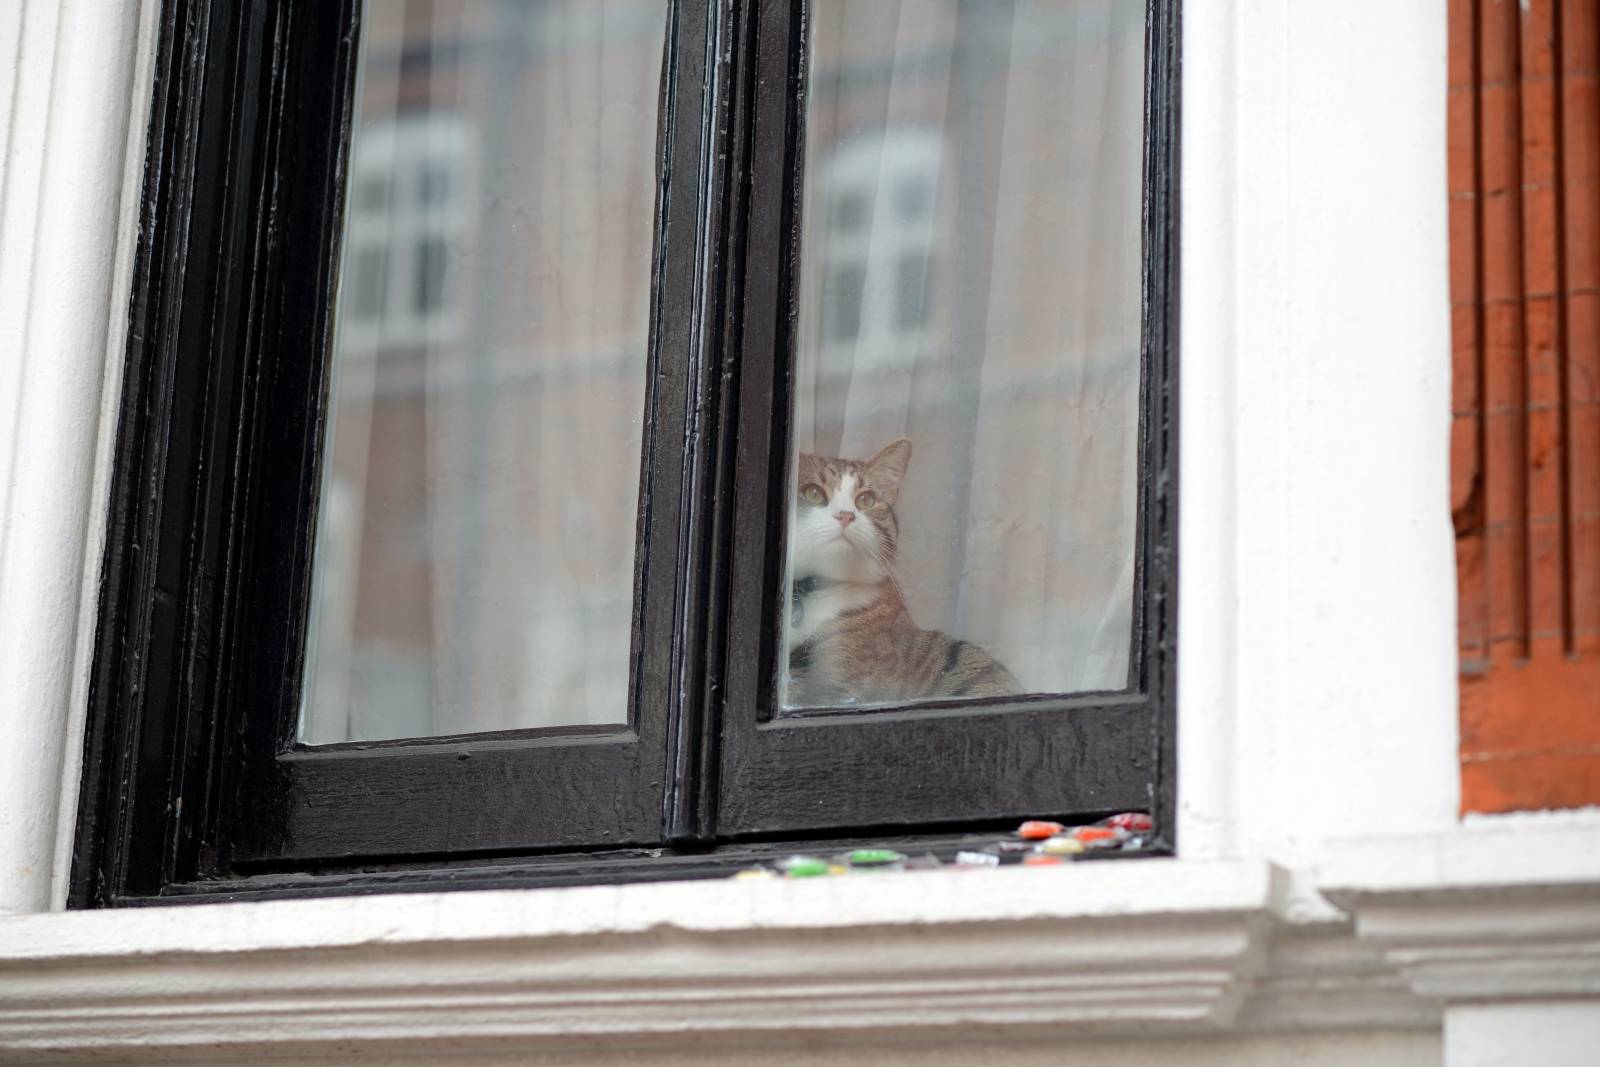 The embassy cat of Julian Assange